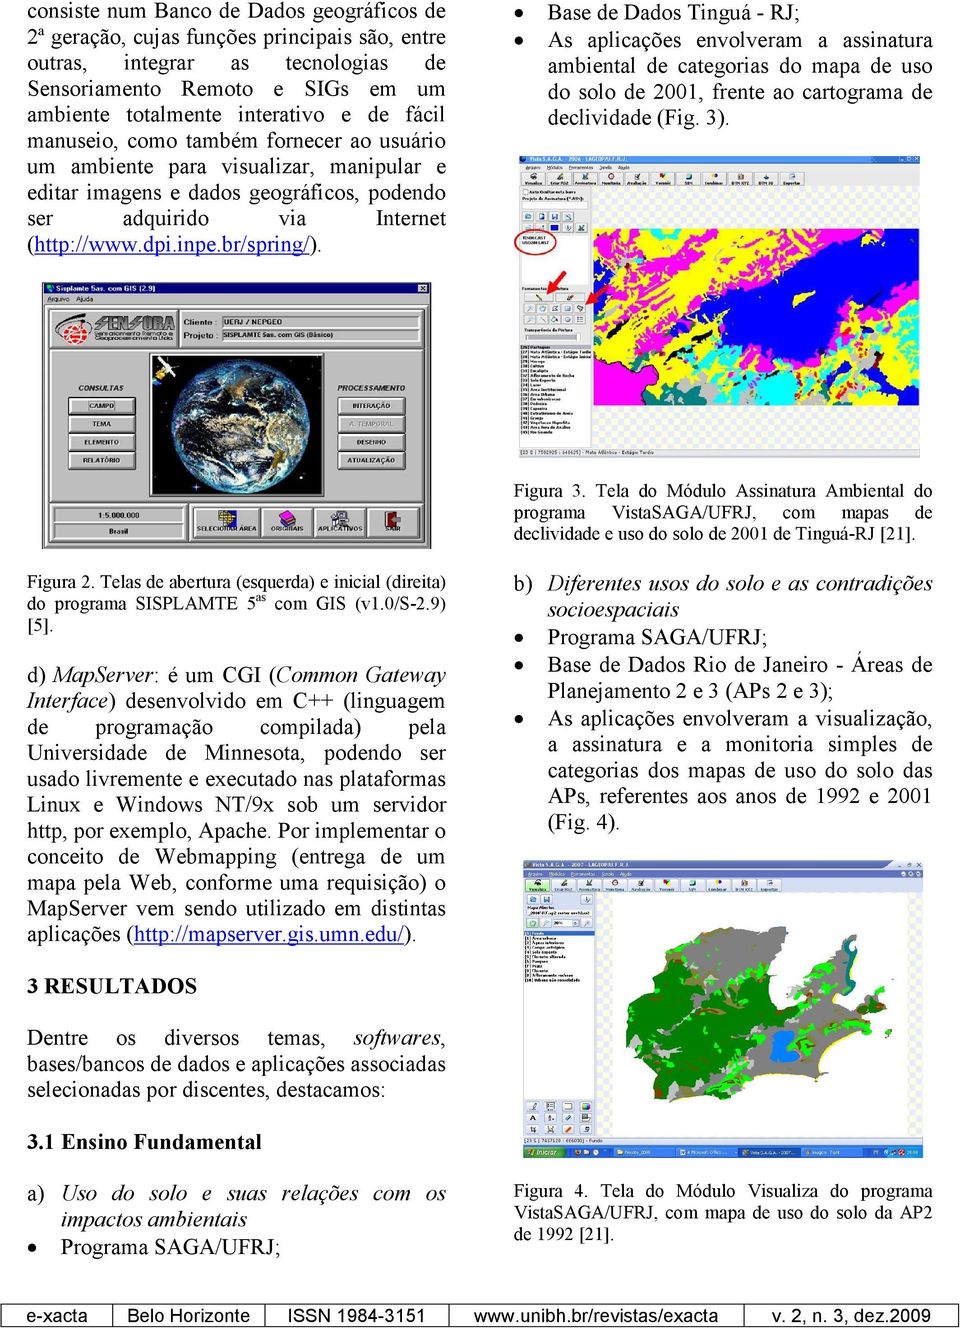 Base de Dados Tinguá - RJ; As aplicações envolveram a assinatura ambiental de categorias do mapa de uso do solo de 2001, frente ao cartograma de declividade (Fig. 3). Figura 3.